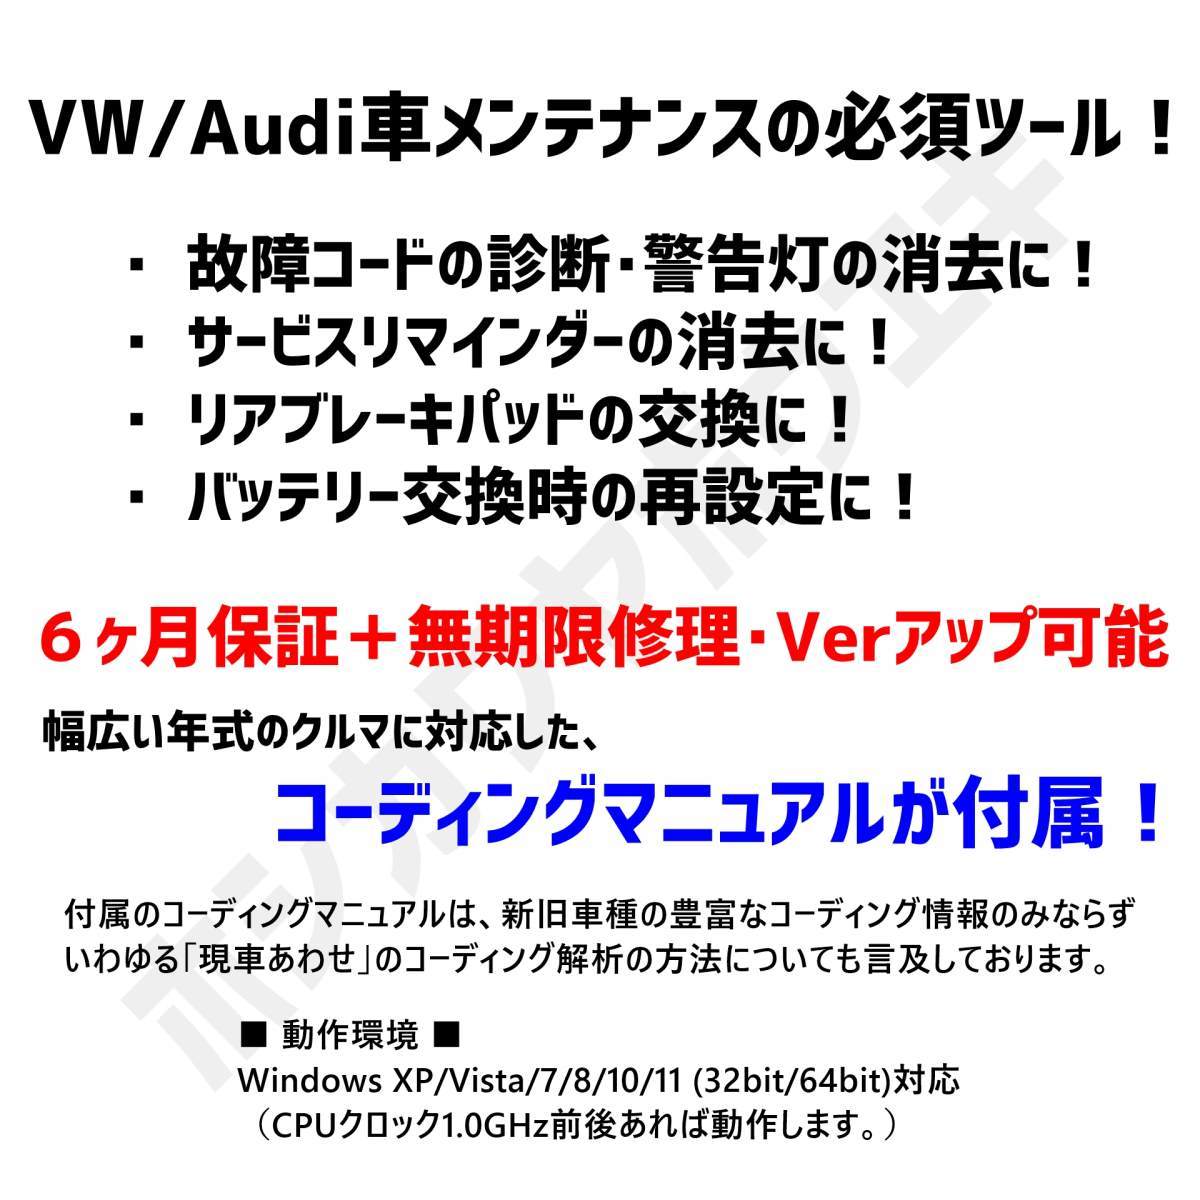 ◆ 【最新版23.11.0・保証付・送料無料】 VCDS 互換ケーブル HEX-V2タイプ 新コーディングマニュアル付 VW ゴルフ7.5 アウディ Audi A3 Q2_画像2